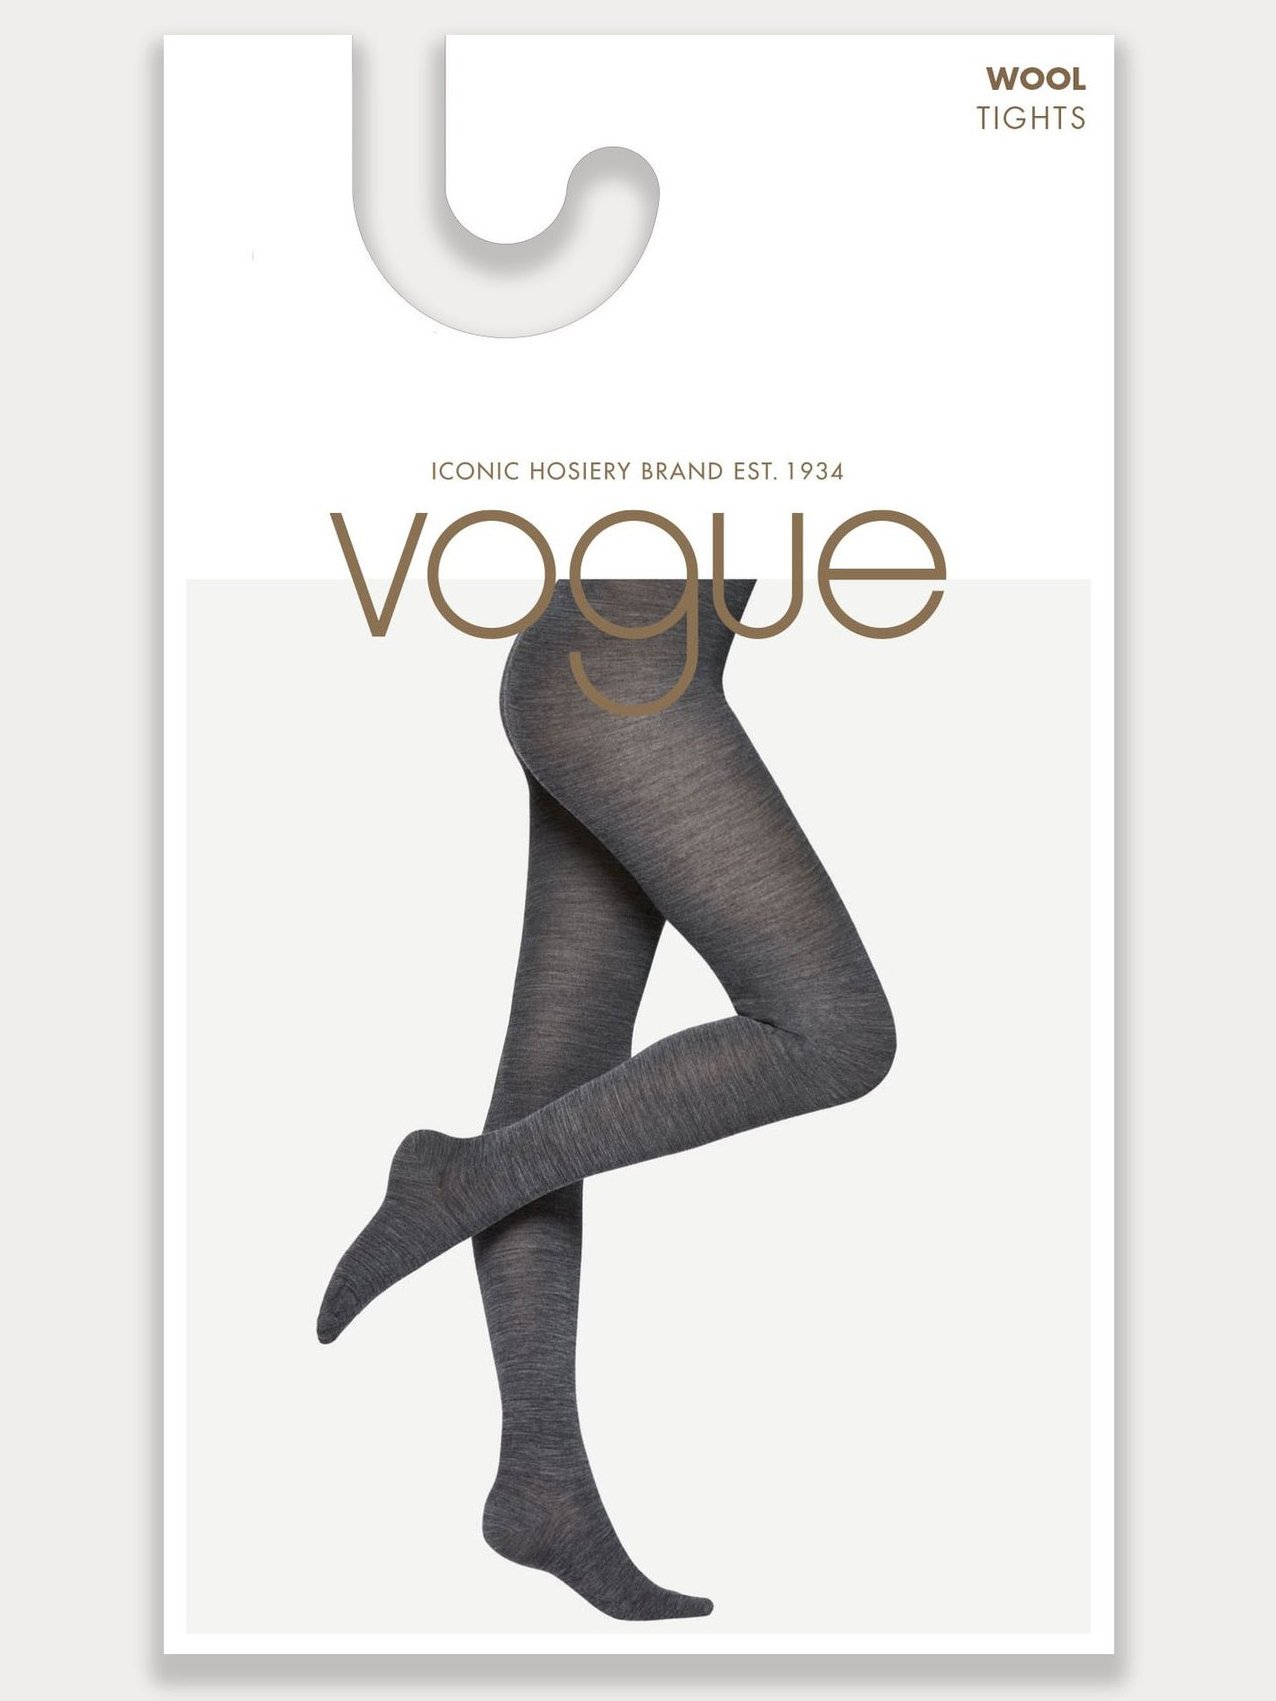 Колготки Vogue Wool 3D купить недорого в интернет-магазине Для Подружек